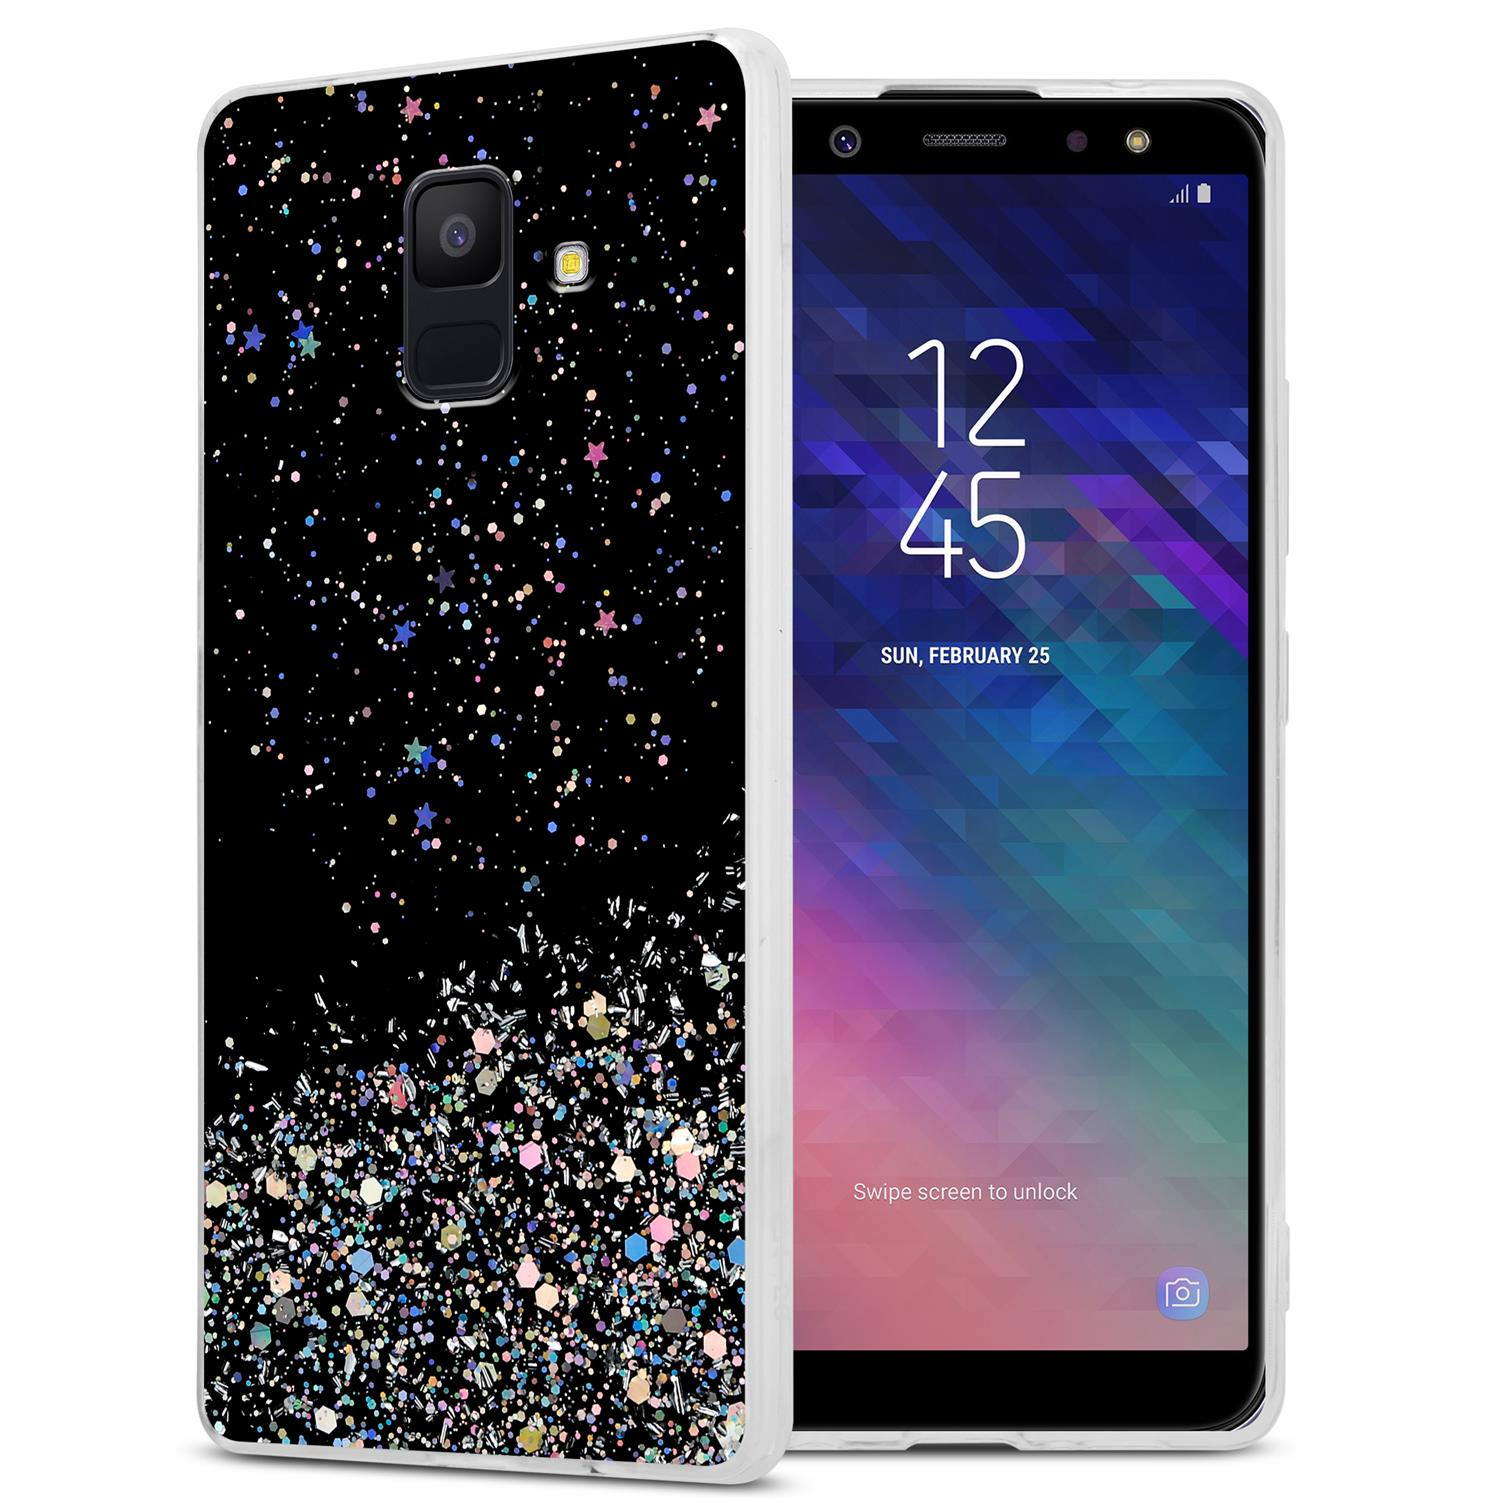 CADORABO Schutzhülle mit funkelnden Glitter, A6 Galaxy Schwarz Glitter 2018, mit Backcover, Samsung